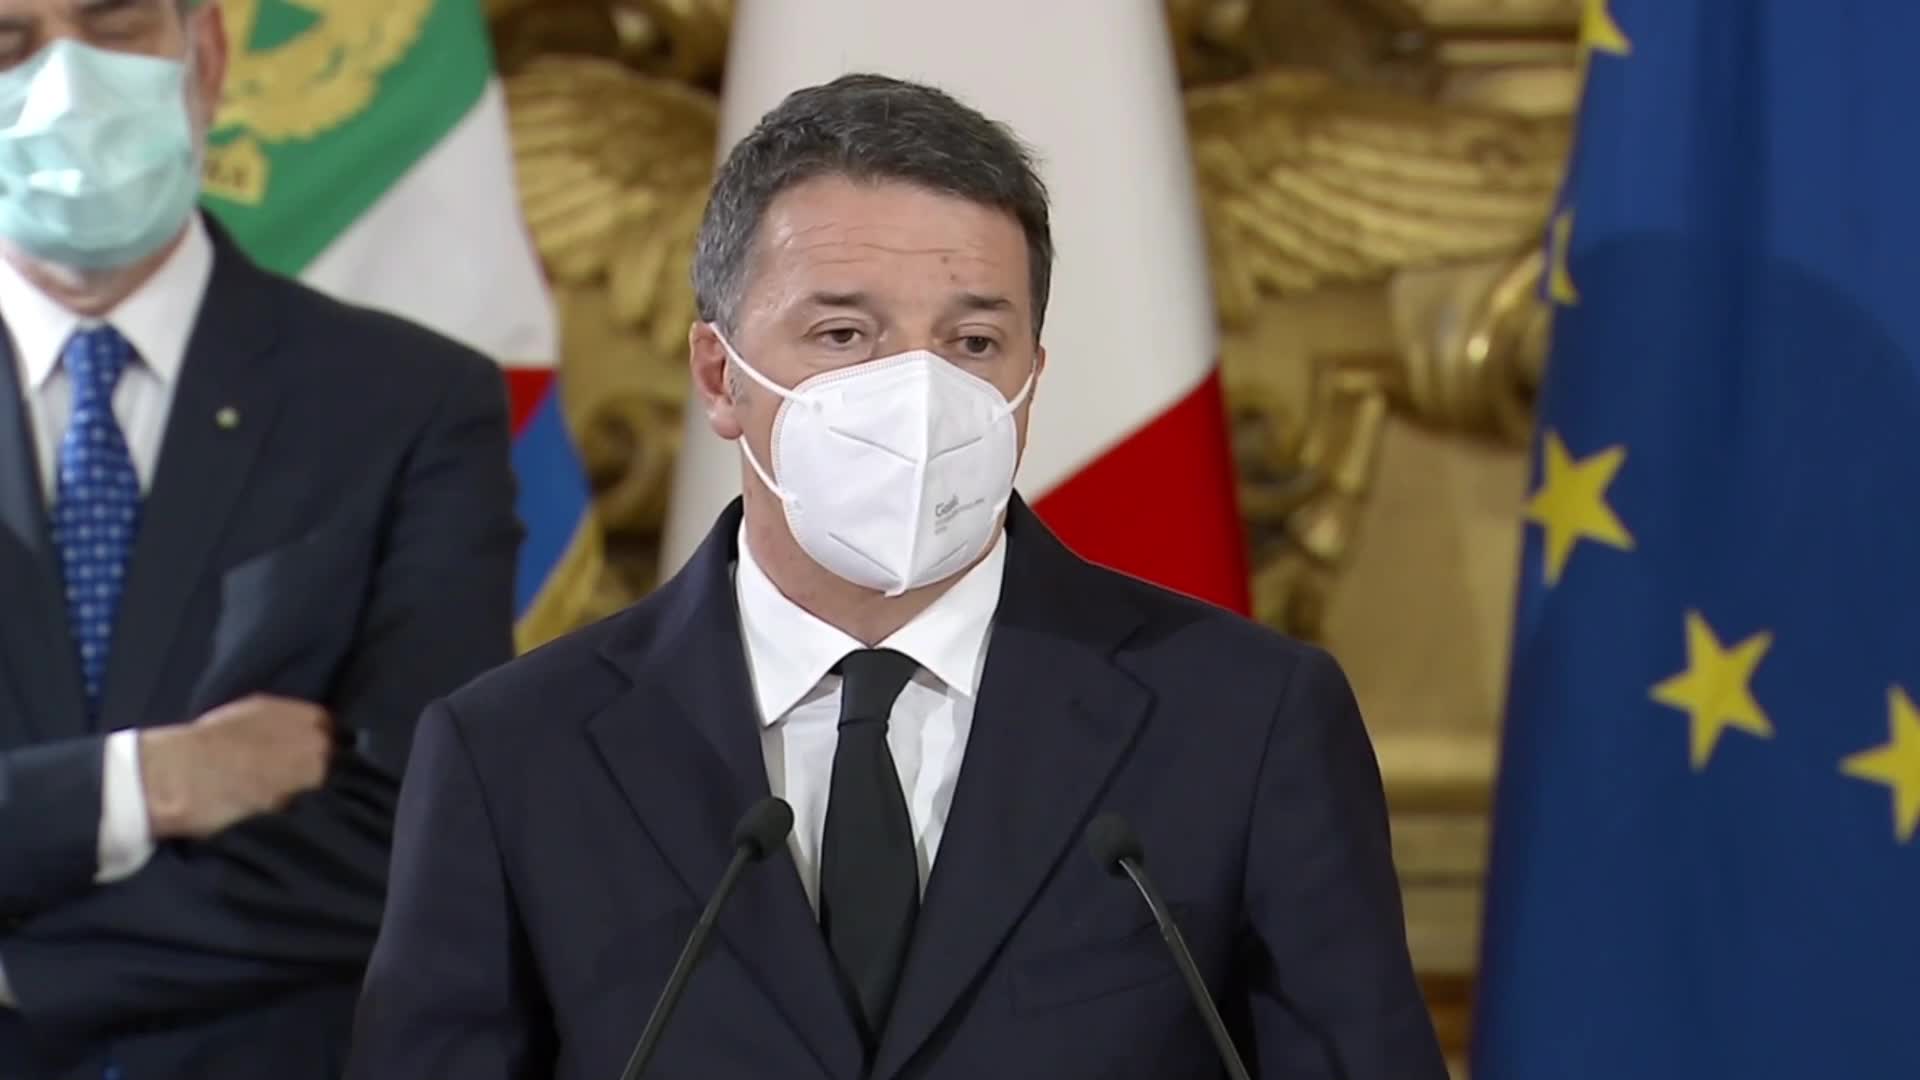 Busta con due bossoli recapitata in Senato a Matteo Renzi